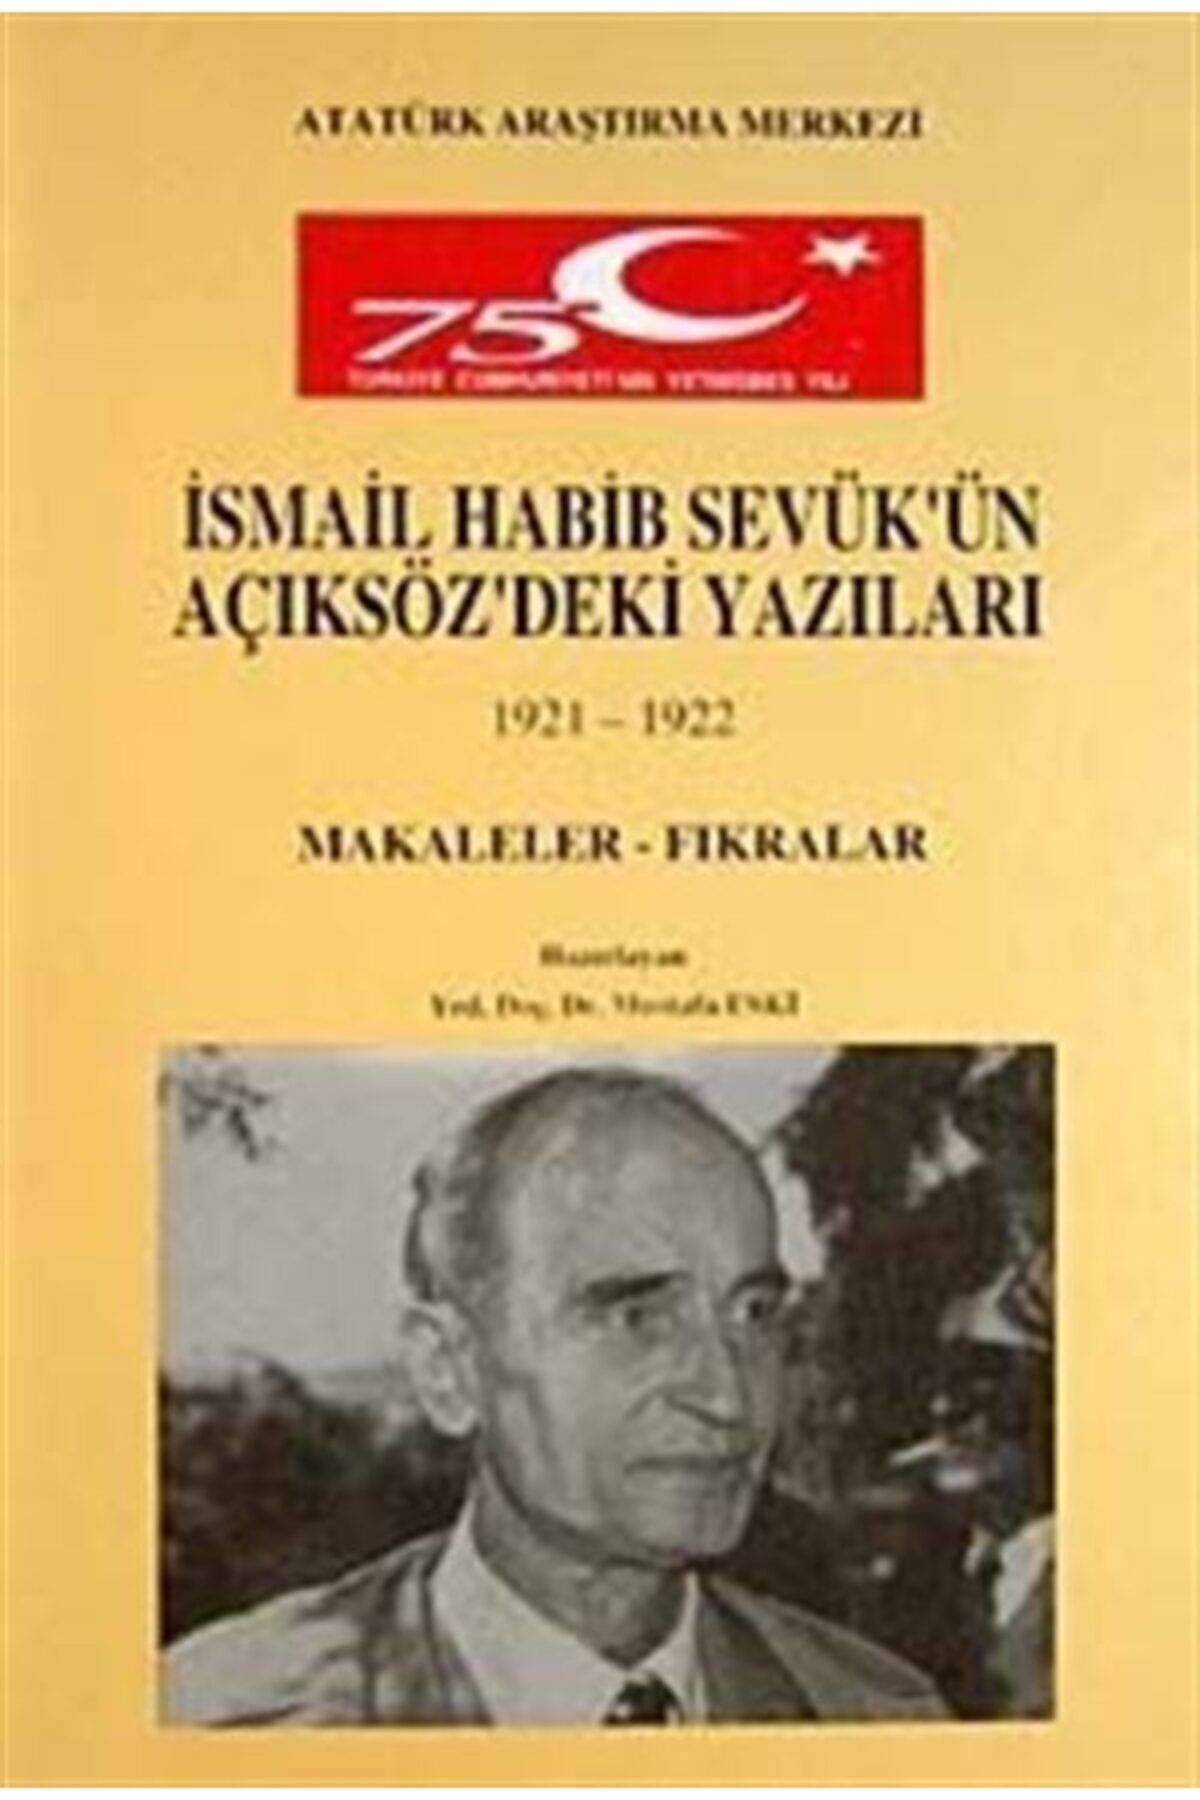 Atatürk Araştırma Merkezi Ismail Habib Sevük'ün Açıksöz'deki Yazıları (1921-1922) Makaleler Fıkralar